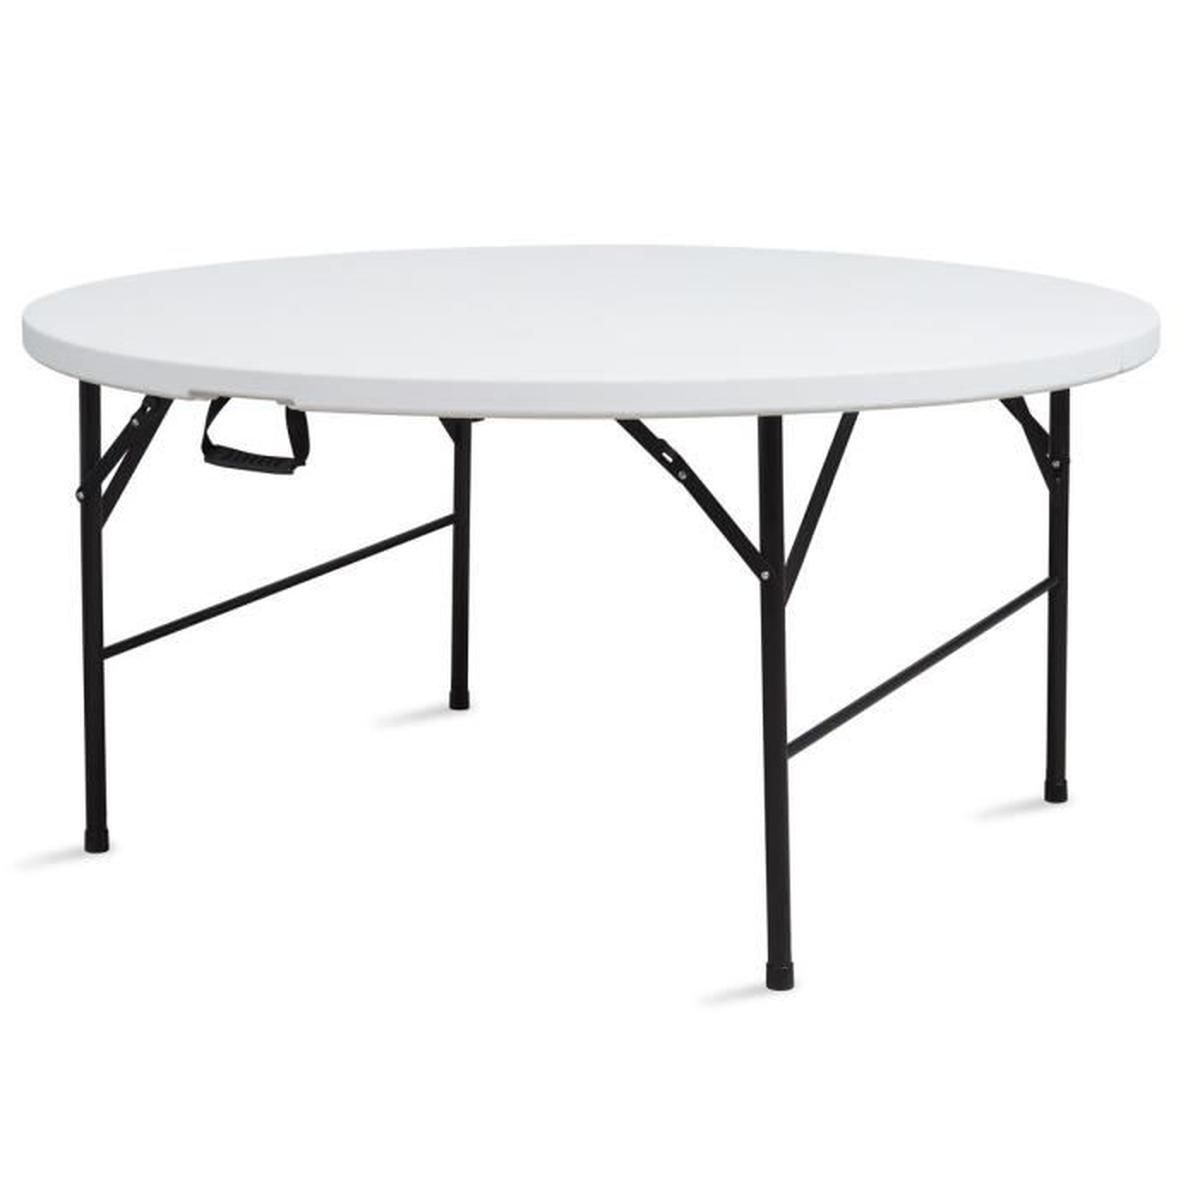 Table Pliante Ronde 150 Cm 8 Personnes - Achat / Vente Table ... pour Table Ronde Jardin Pas Cher